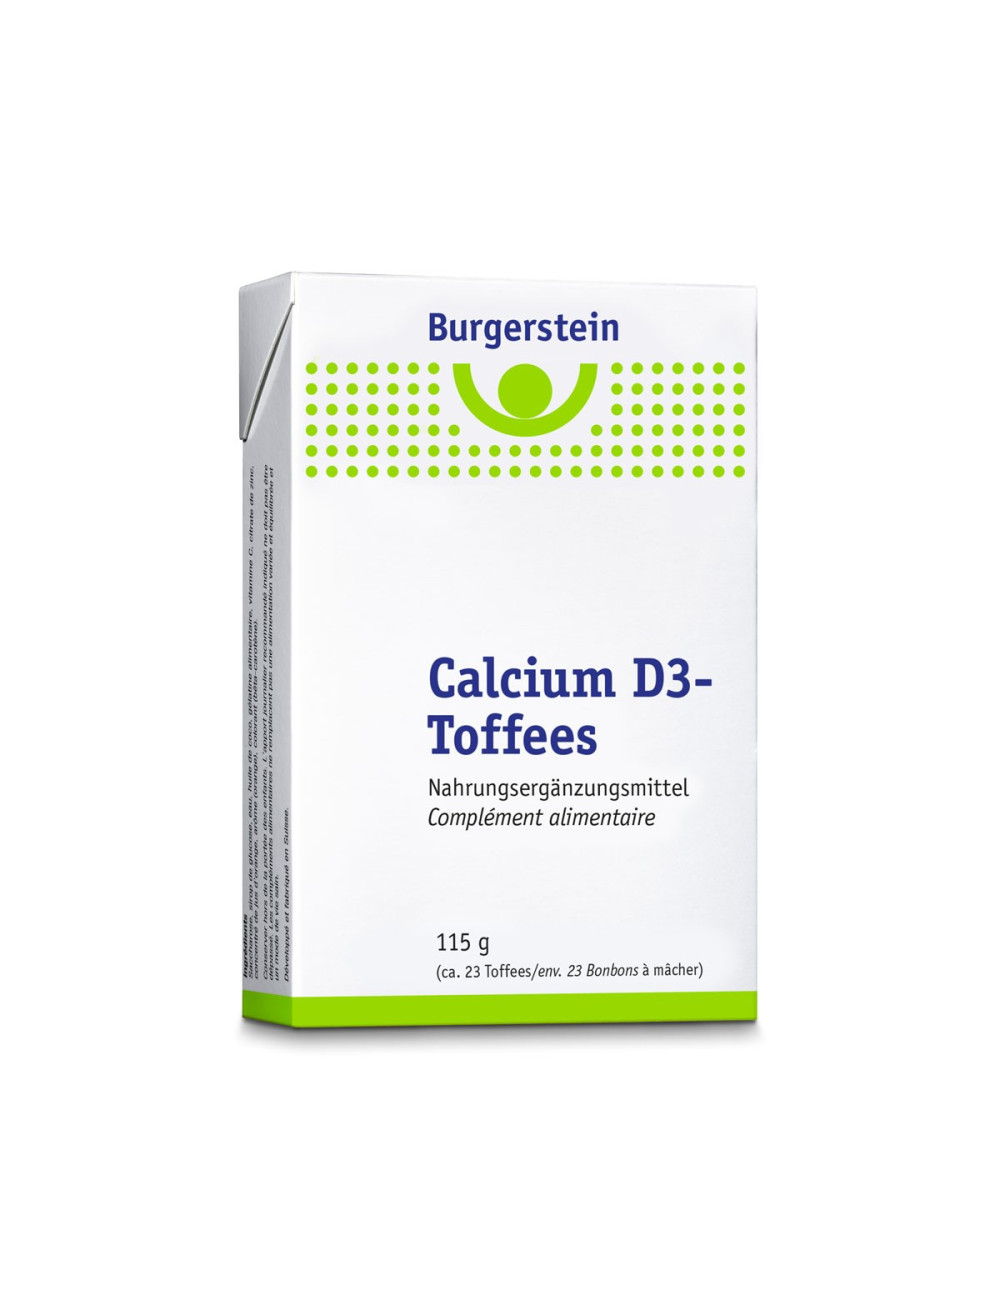 Burgerstein Calcium D3 Toffees